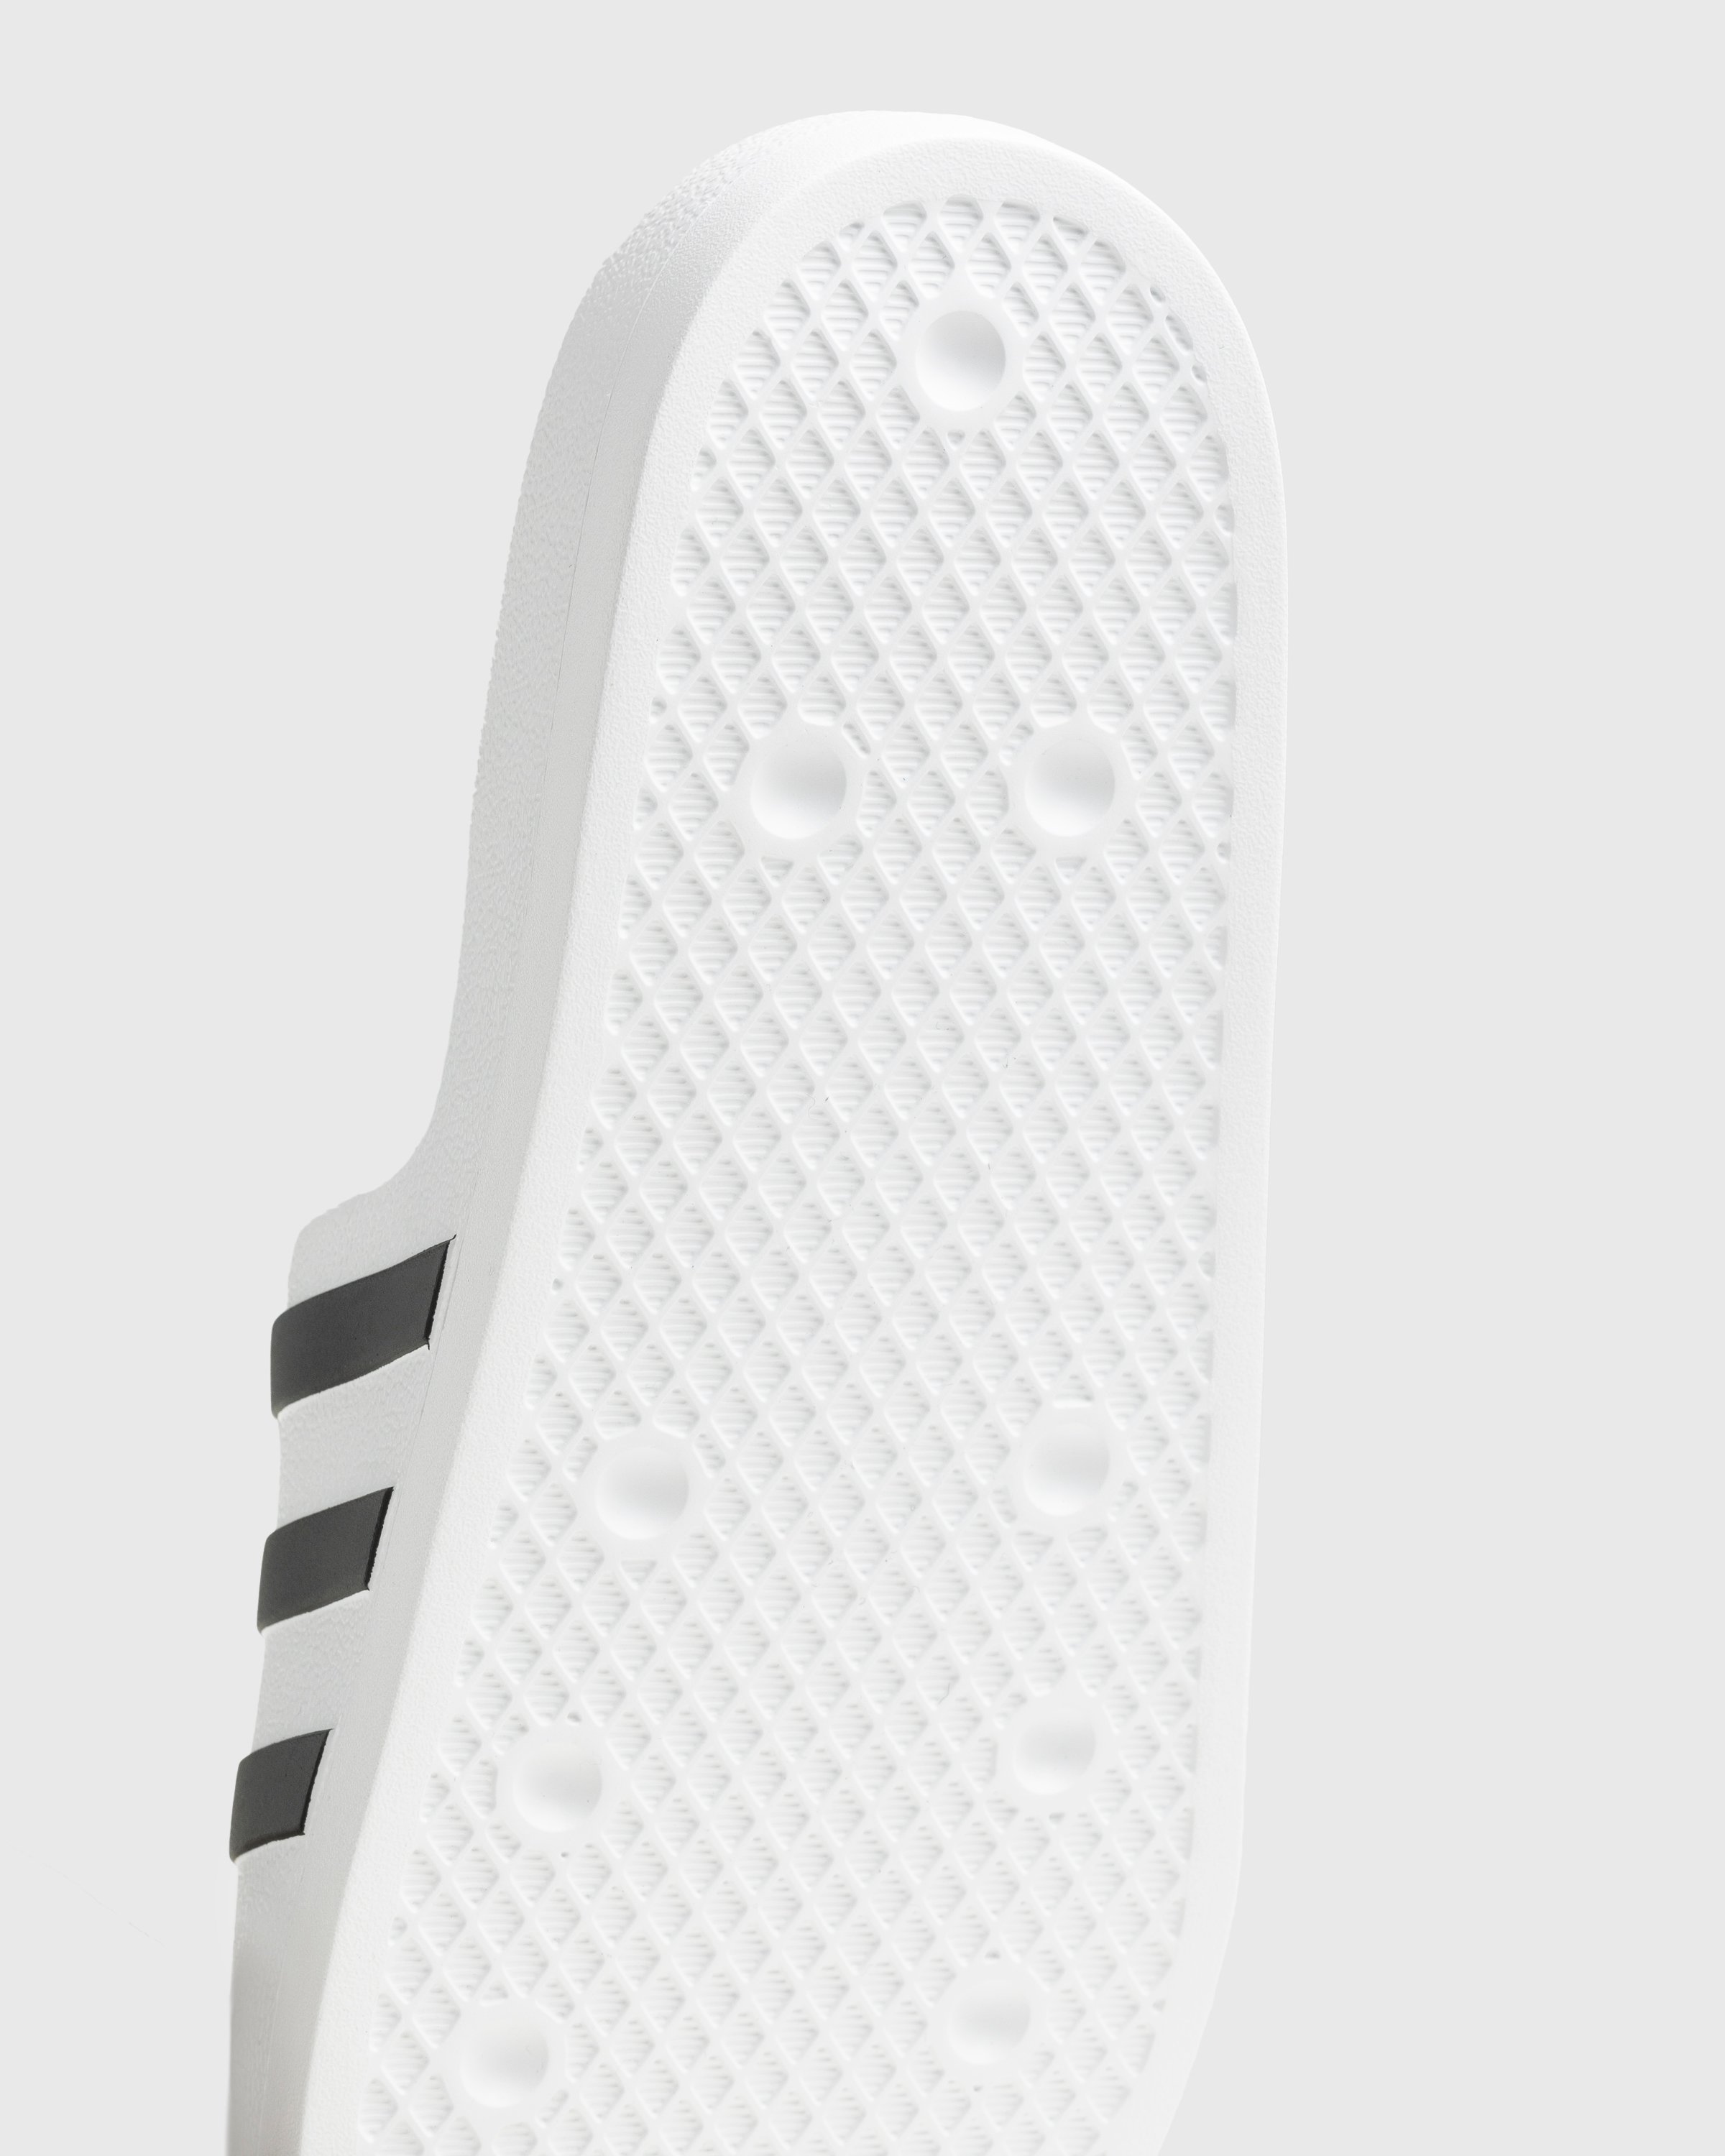 Adidas - Adifom Adilette White/Black/White - Footwear - White - Image 6